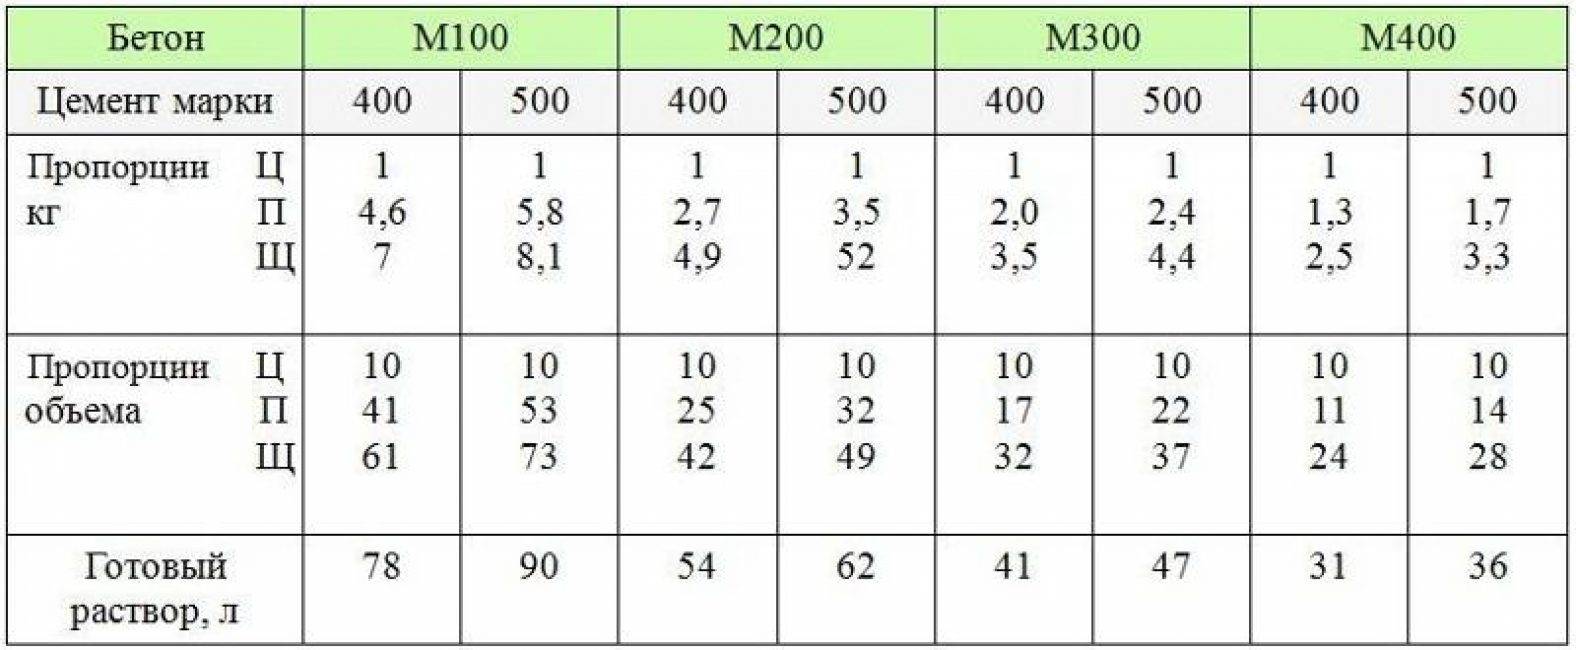 Состав бетона м300 на 1м3 - таблица: пропорции, приготовление